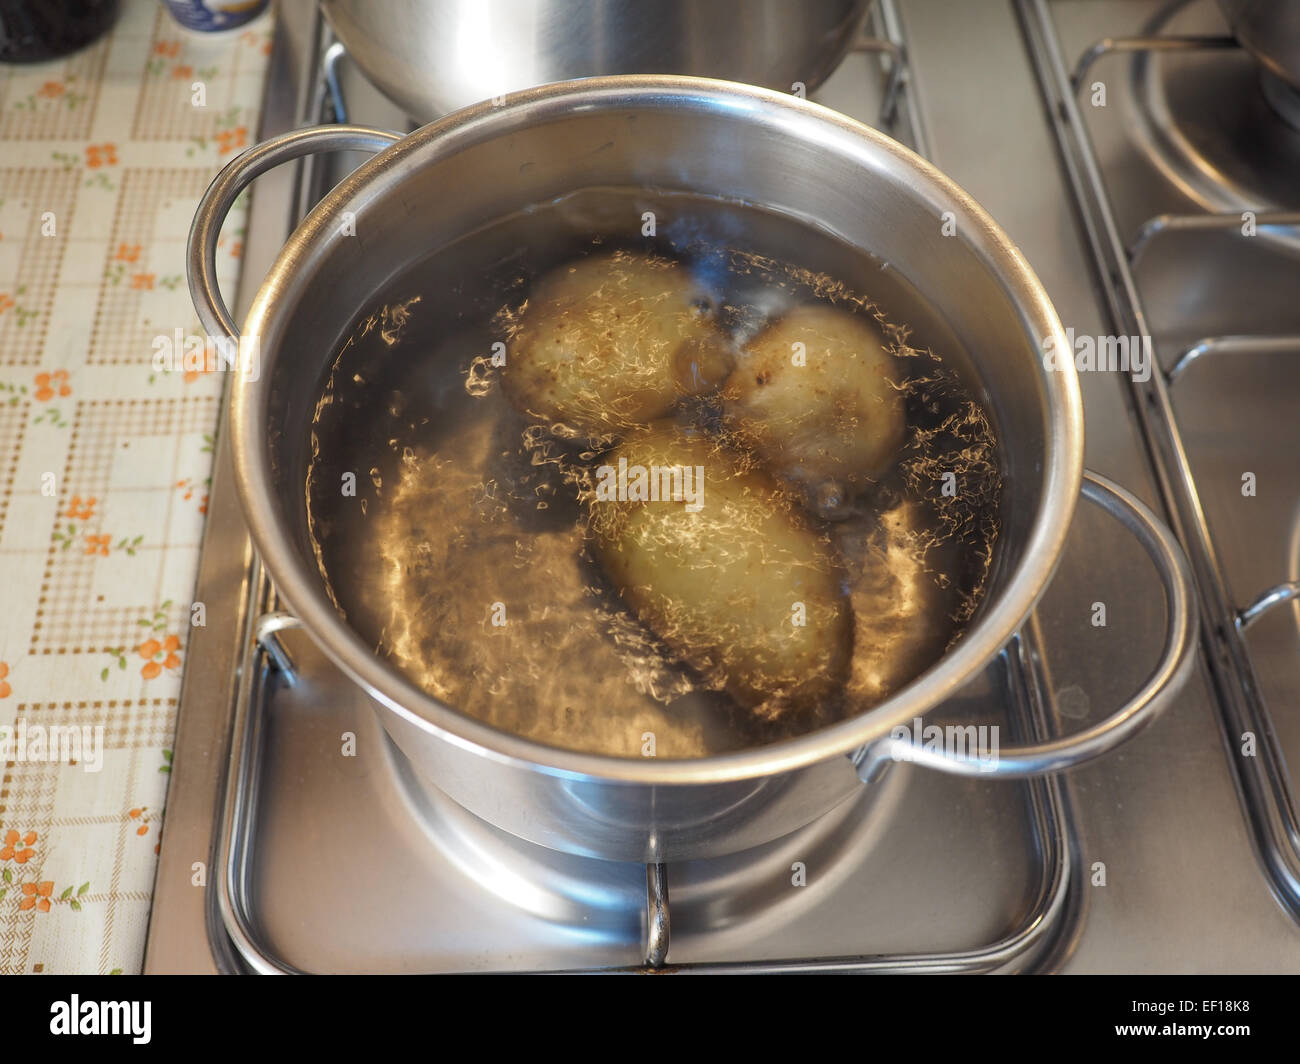 Картошку кидать в кипящую воду. Кастрюля с картошкой на плите. Картошка в кастрюле. Картошка в сотейнике на плите. Картофель варящийся на плите.